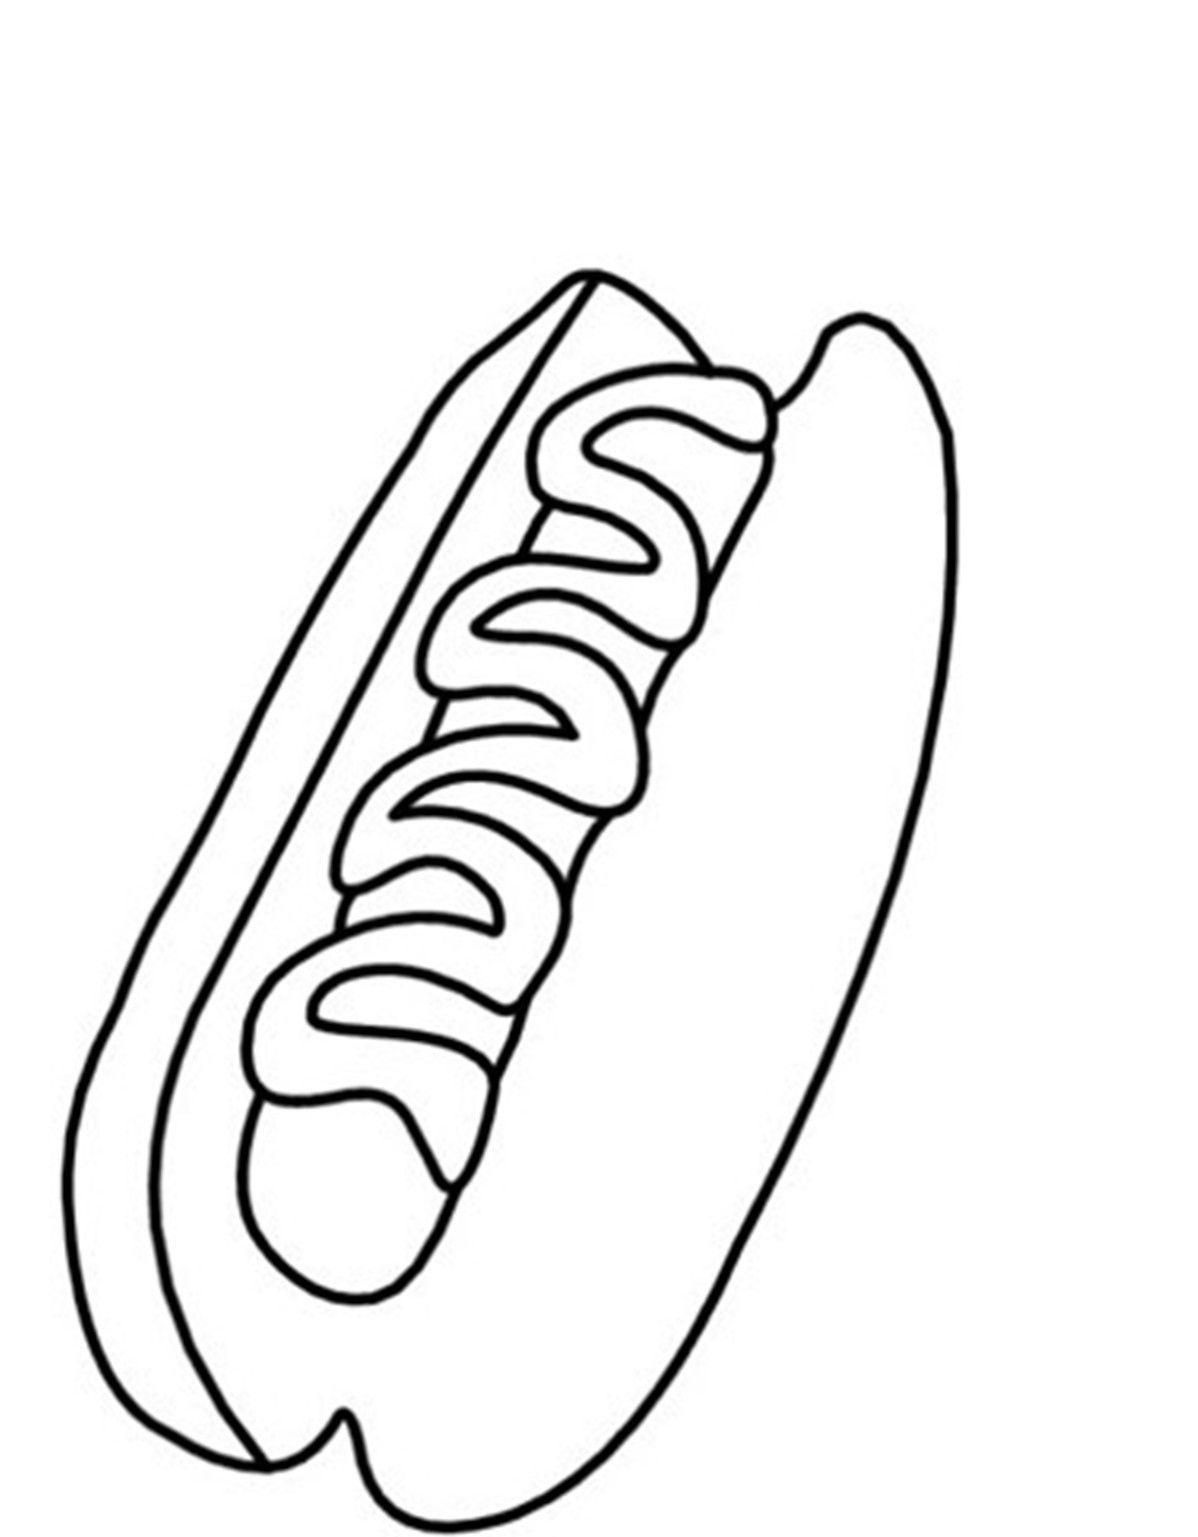 Hot Dog Dibujo